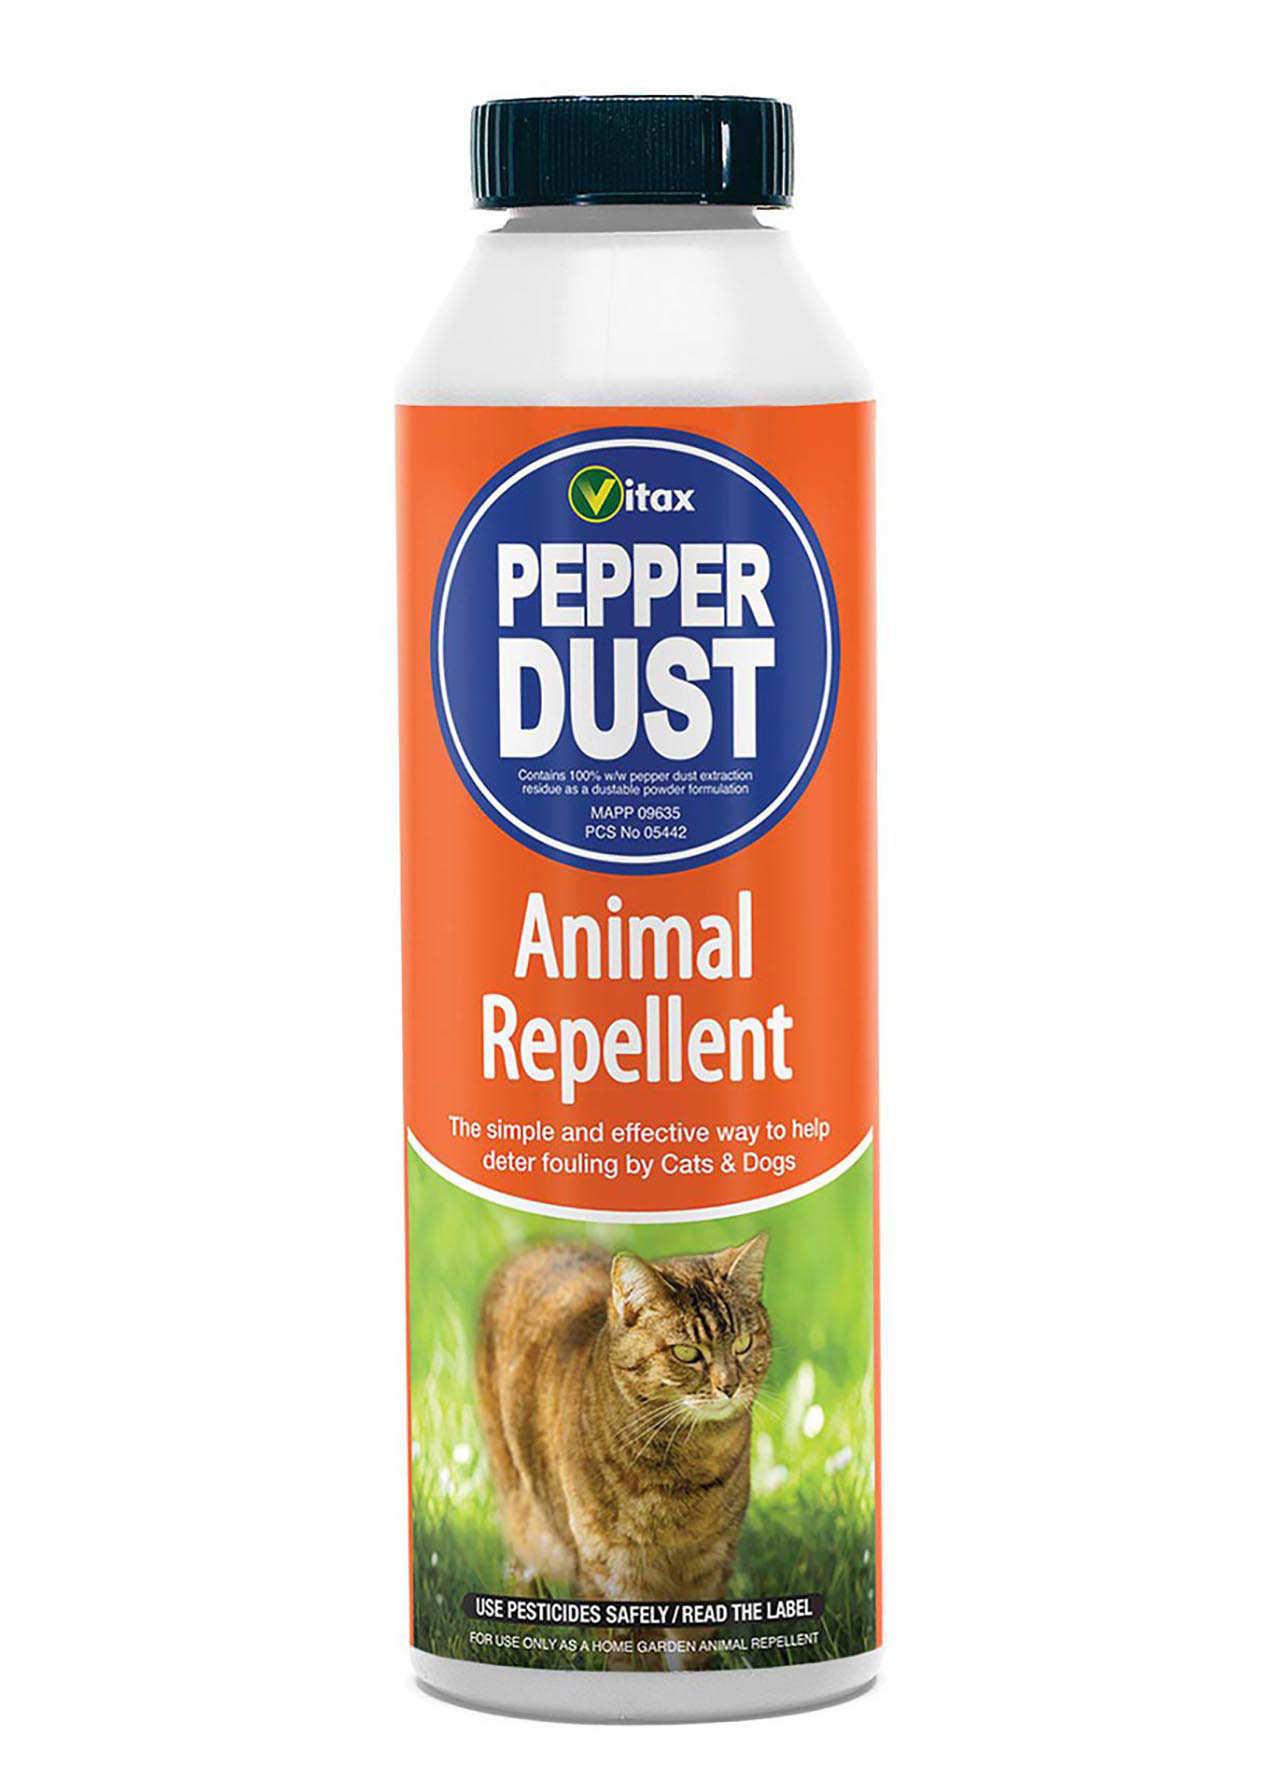 Pepper dust